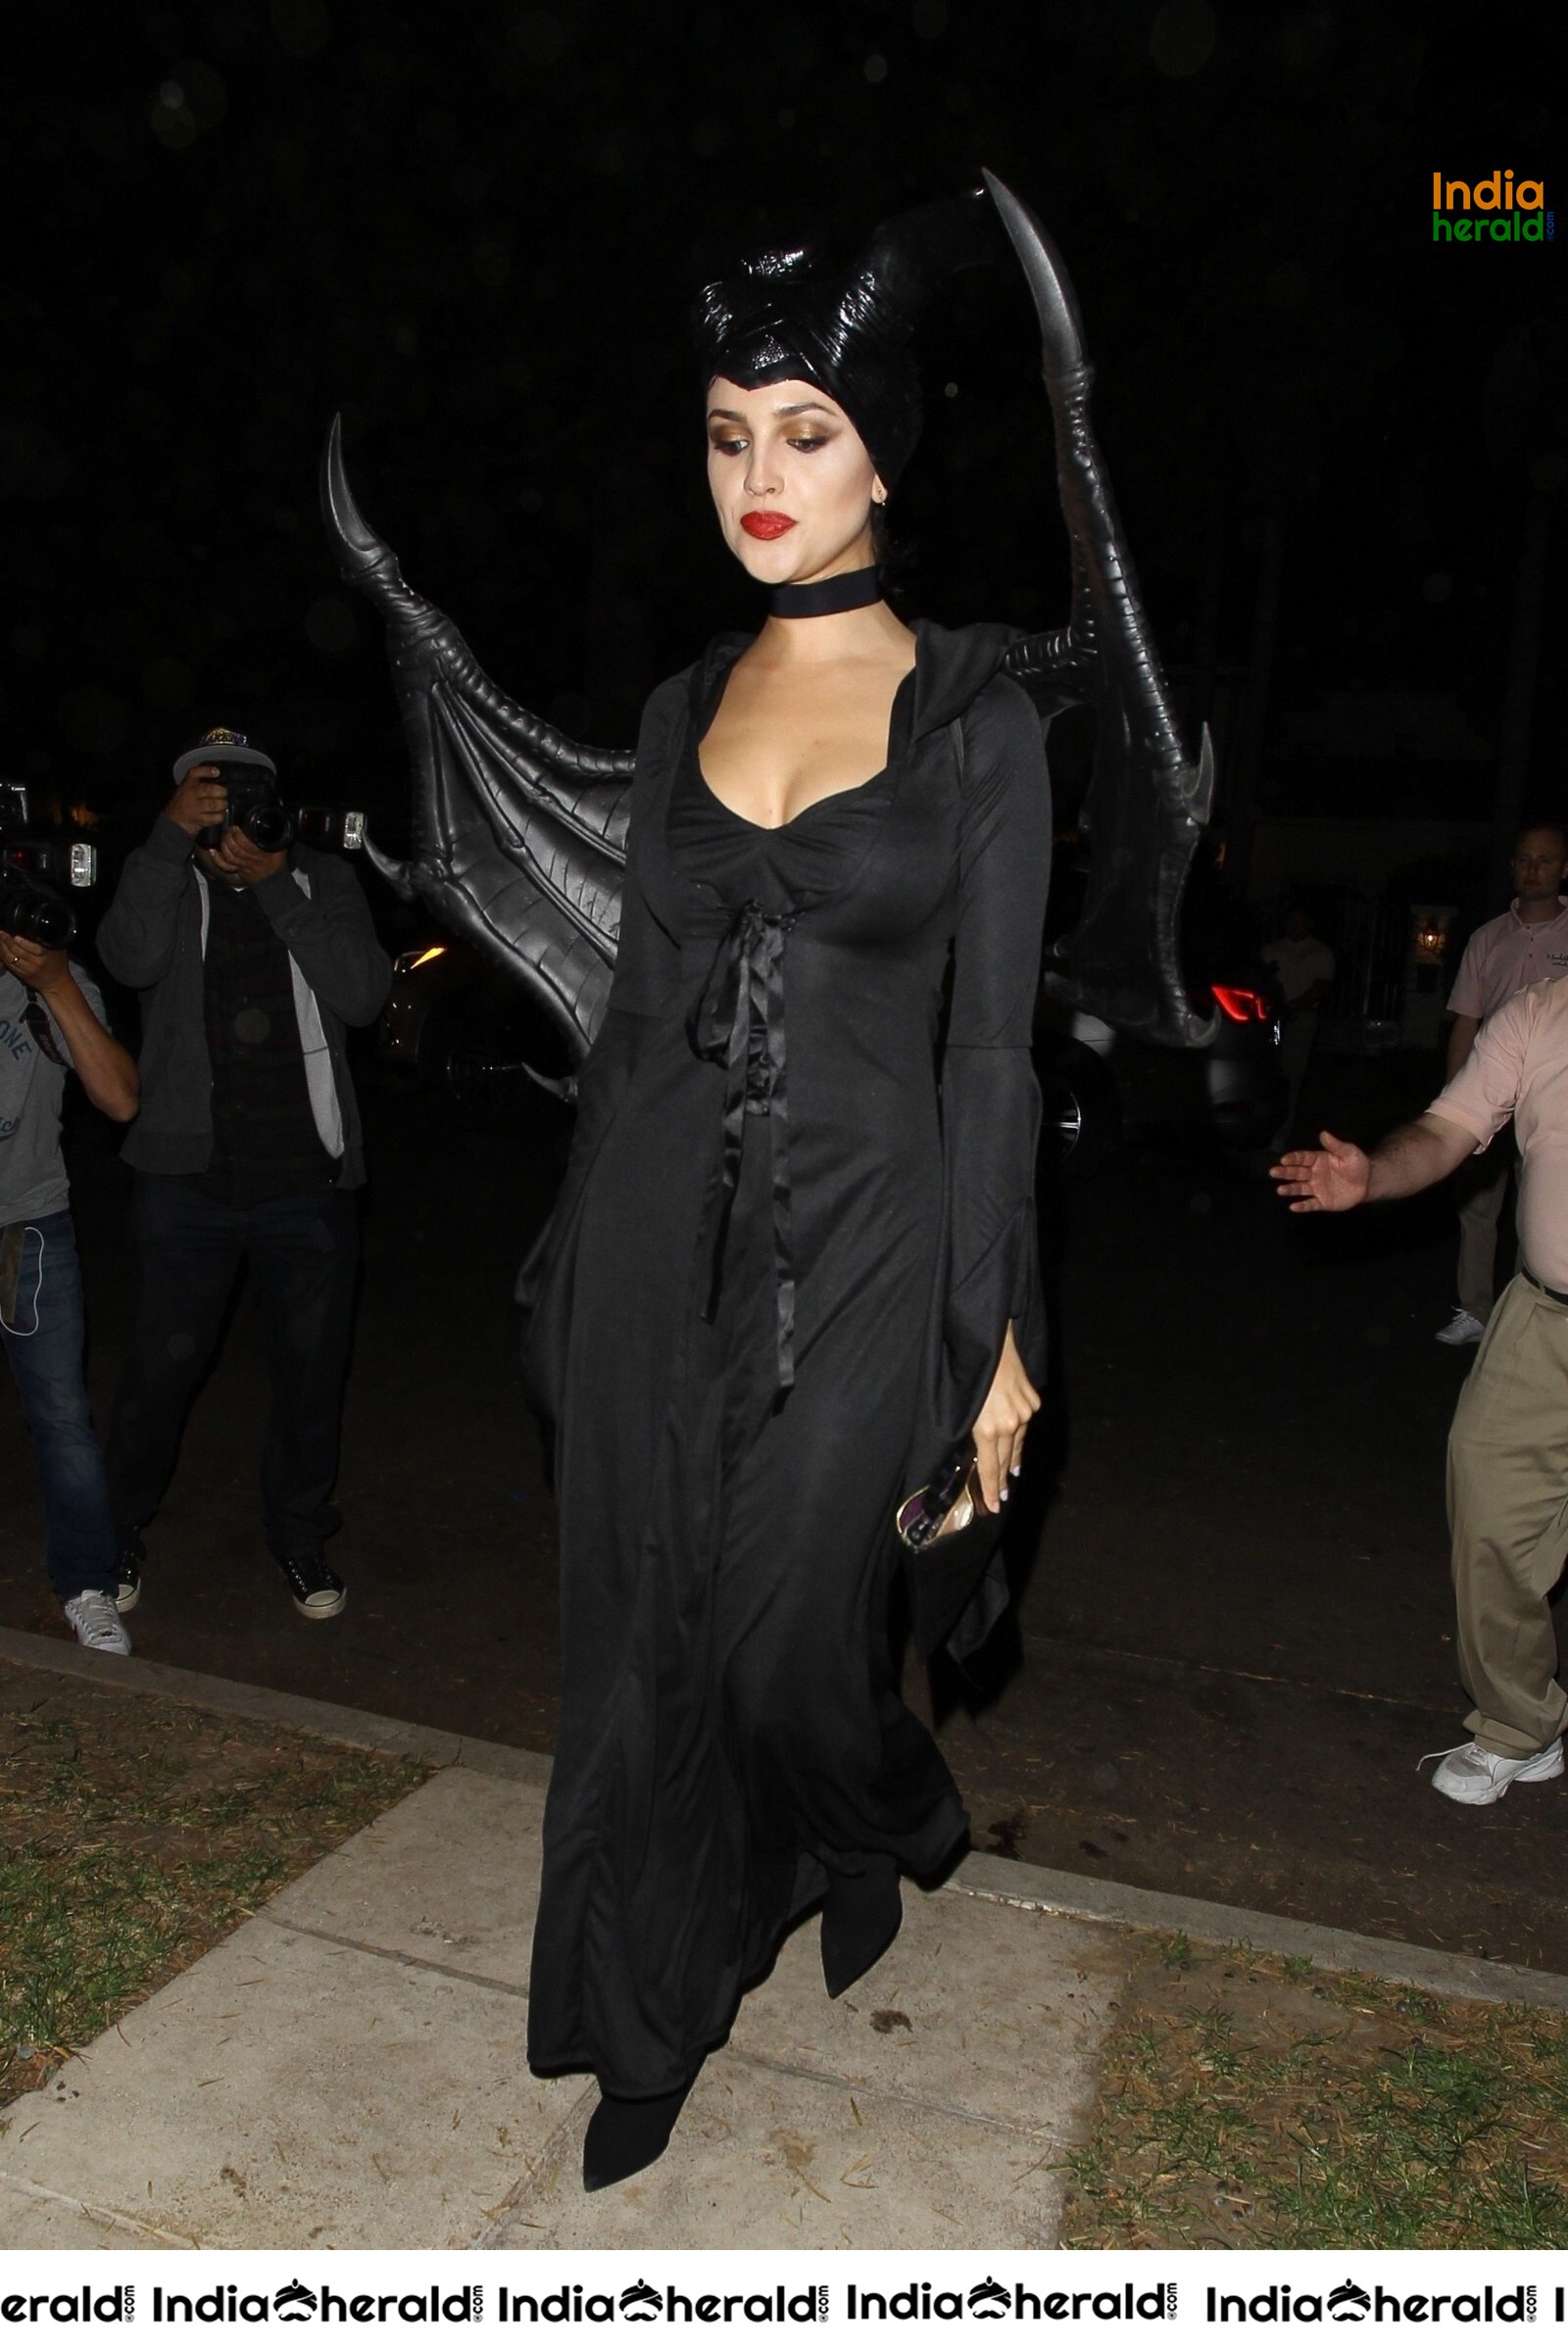 Eiza Gonzalez at Casamigos Halloween Party in Beverly Hills Set 1